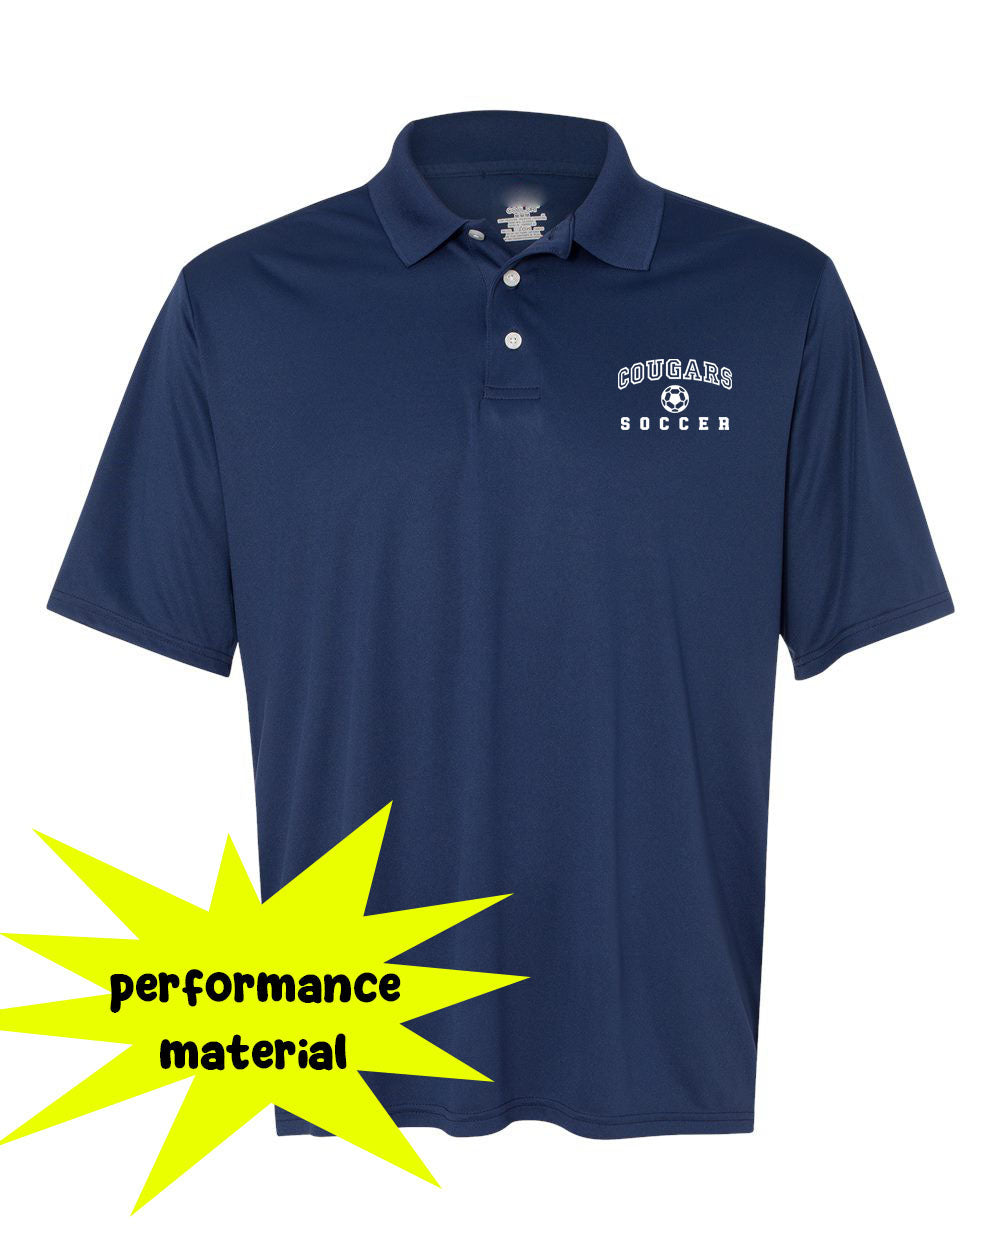 Kittatinny Soccer Design 1 Performance Material Polo T-Shirt